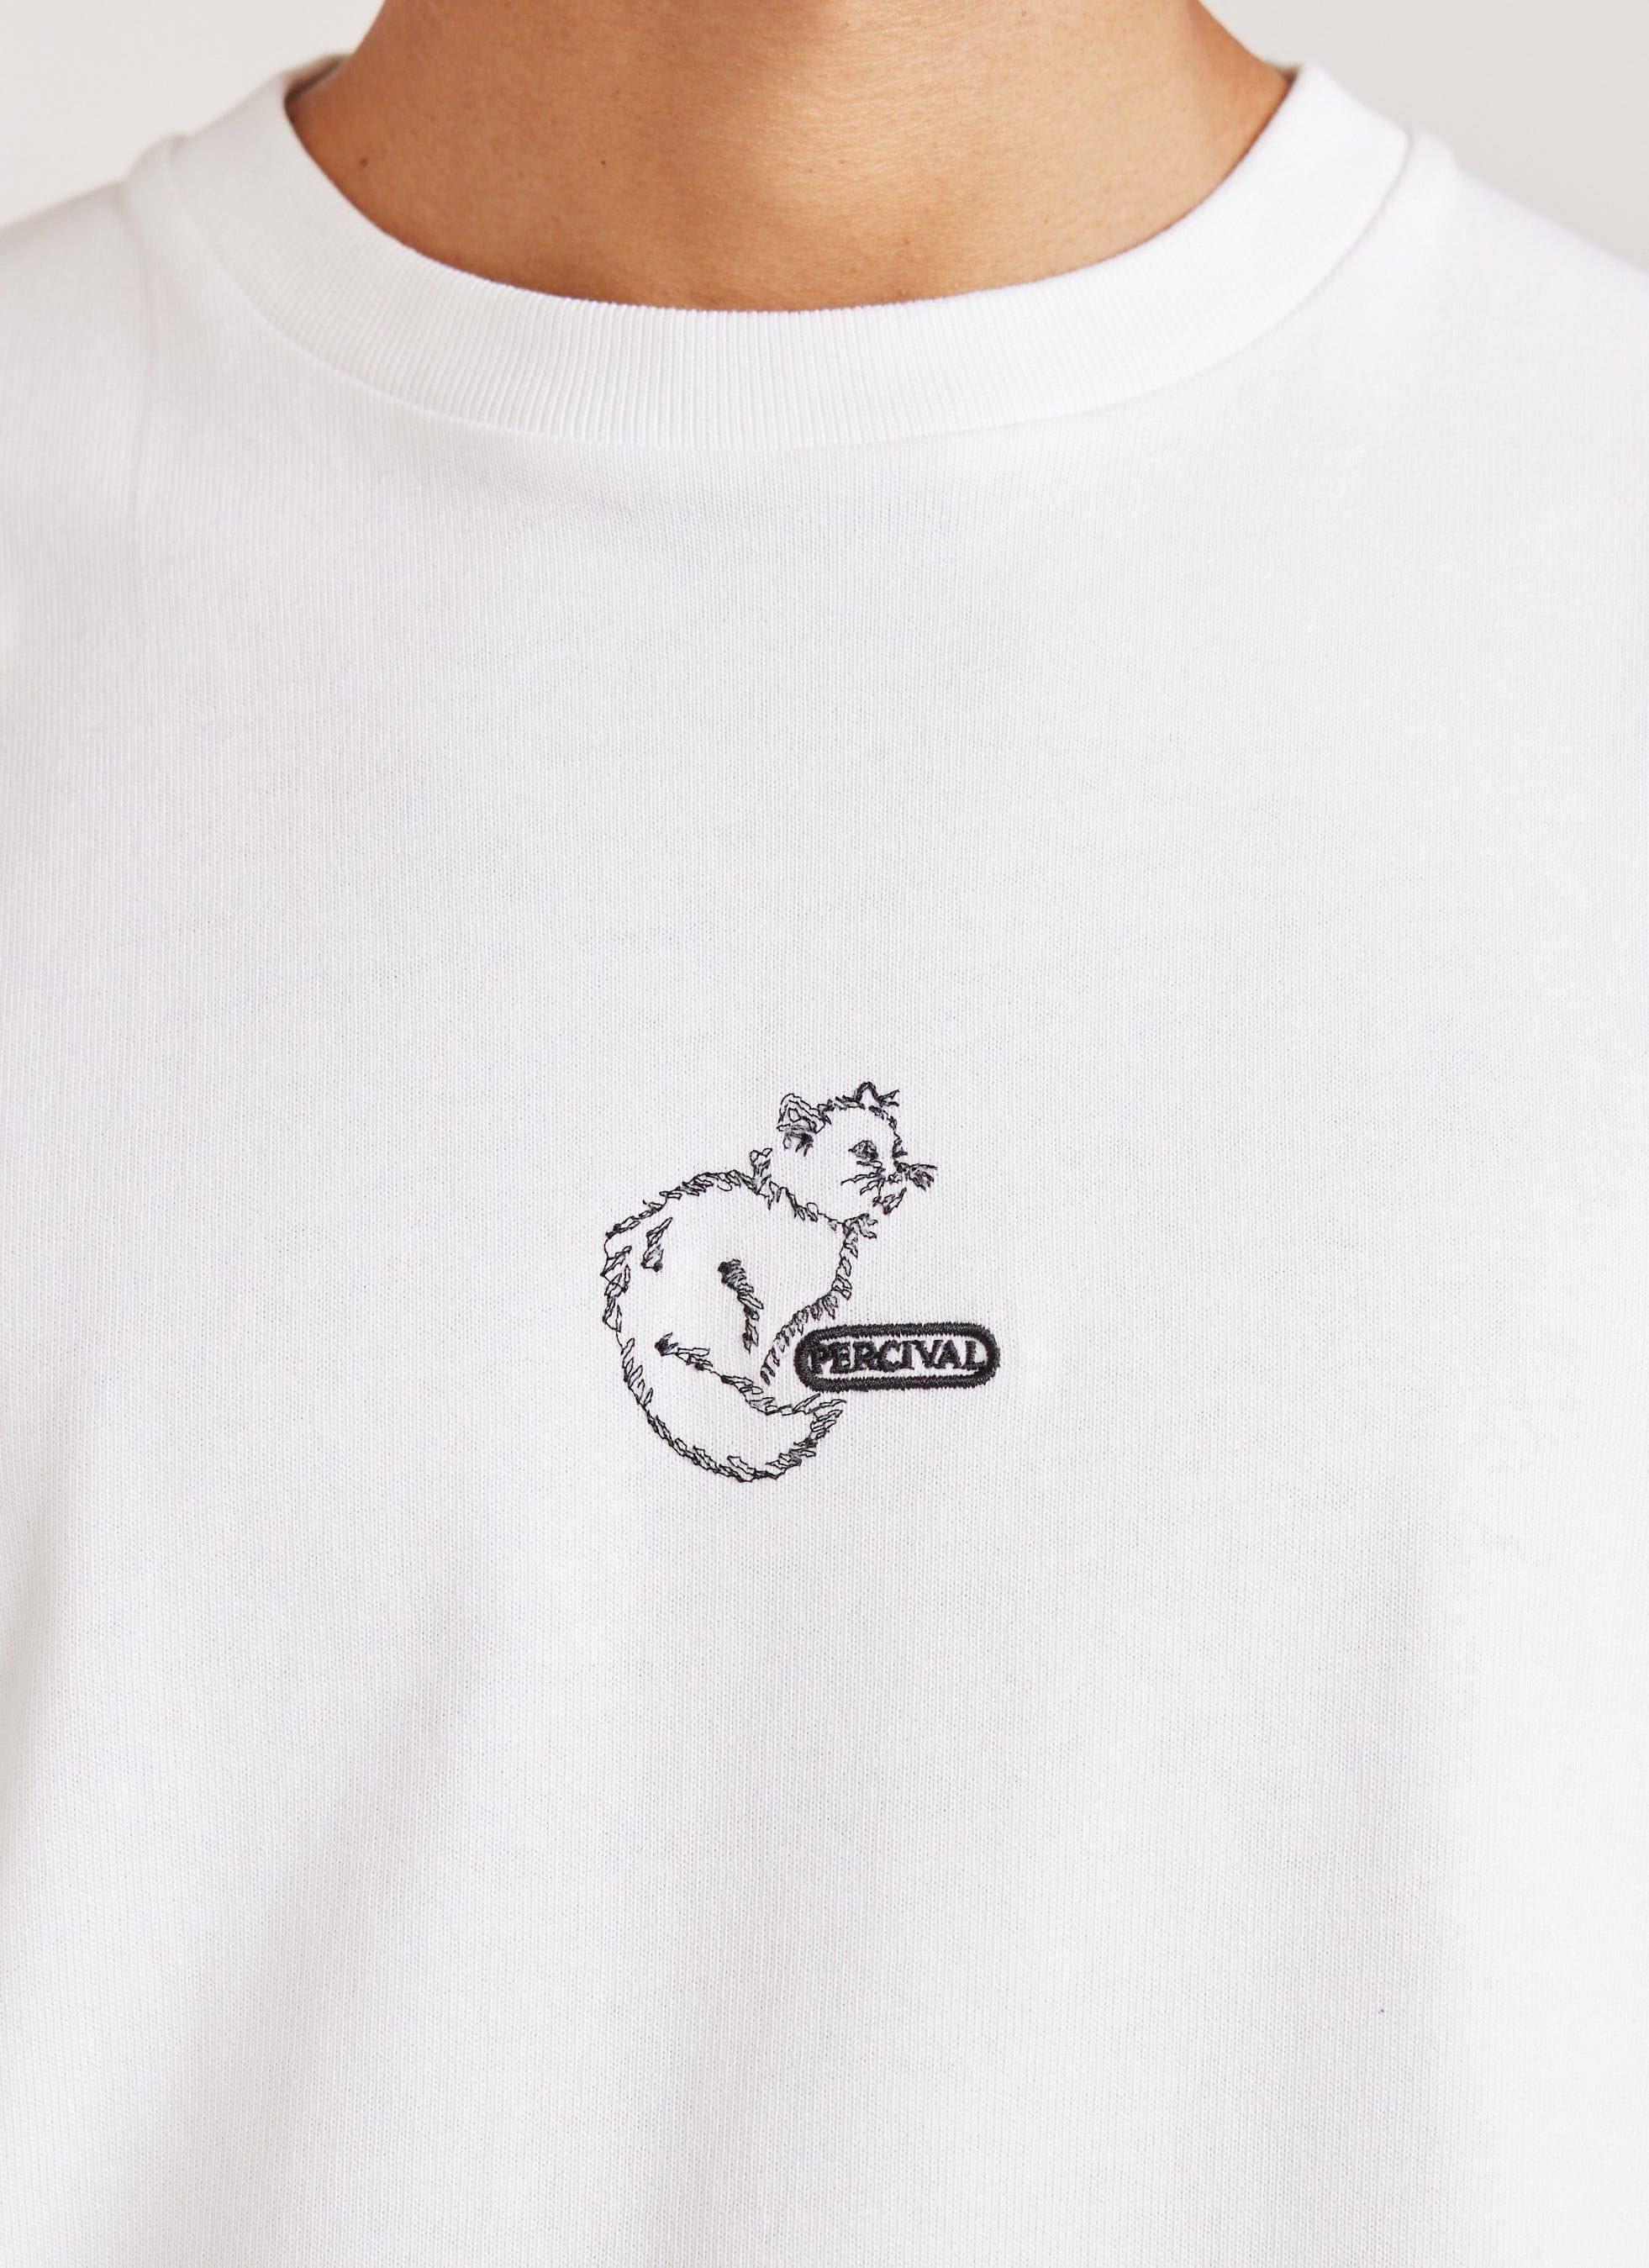 Percival Cotter Cat White T-shirt